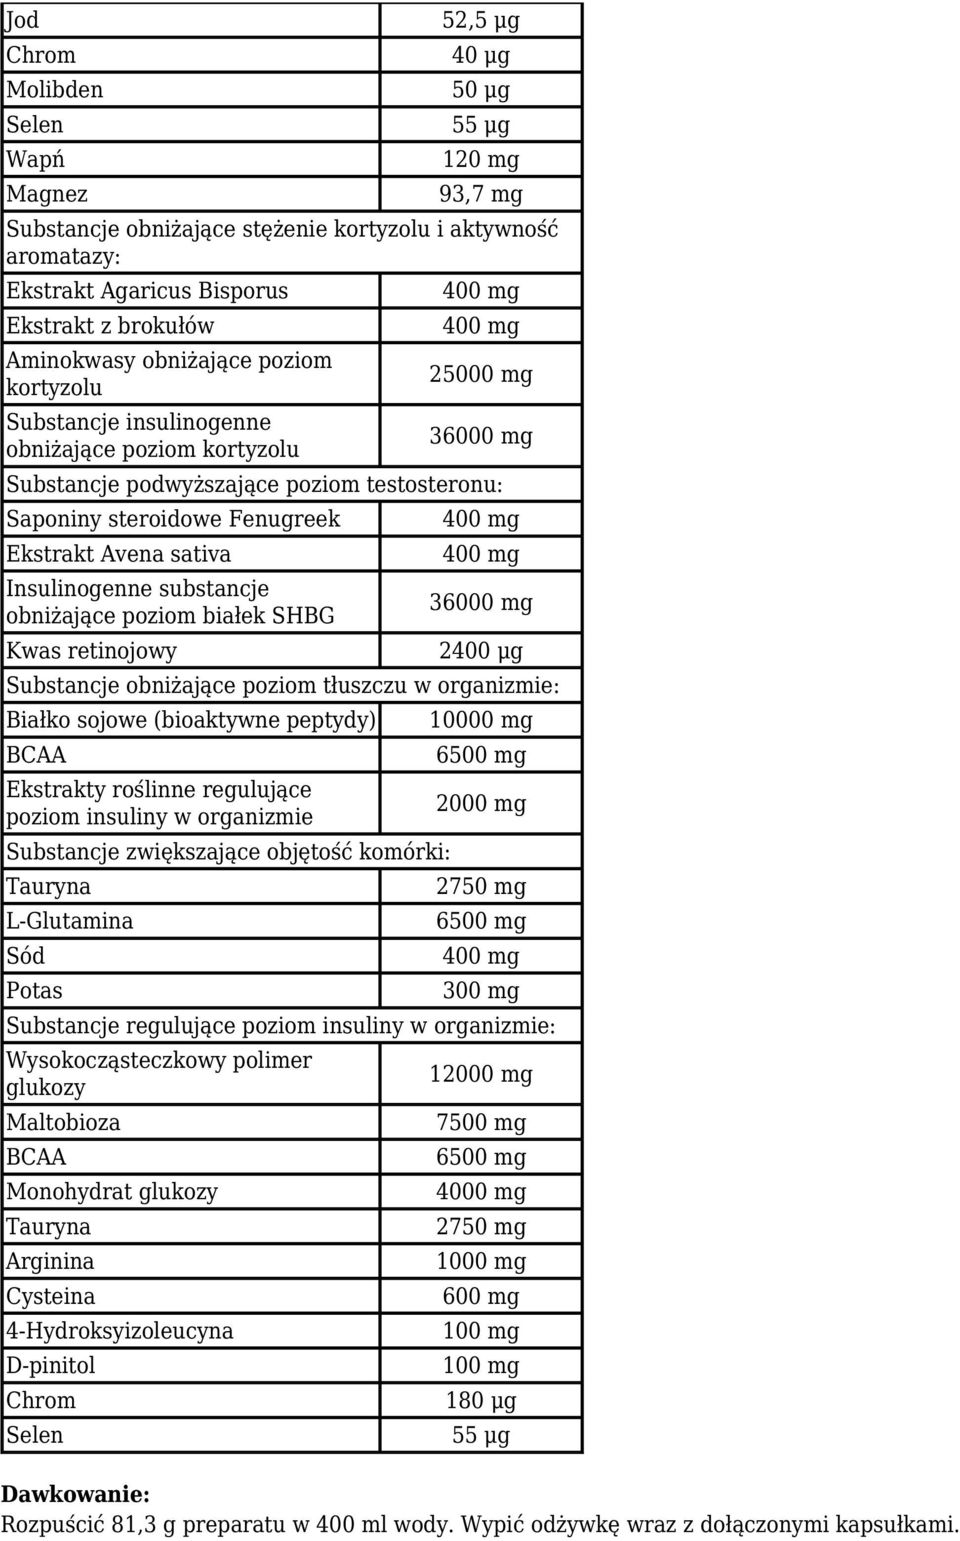 Insulinogenne substancje obniżające poziom białek SHBG Kwas retinojowy 36000 mg 2400 μg Substancje obniżające poziom tłuszczu w organizmie: Białko sojowe (bioaktywne peptydy) BCAA Ekstrakty roślinne